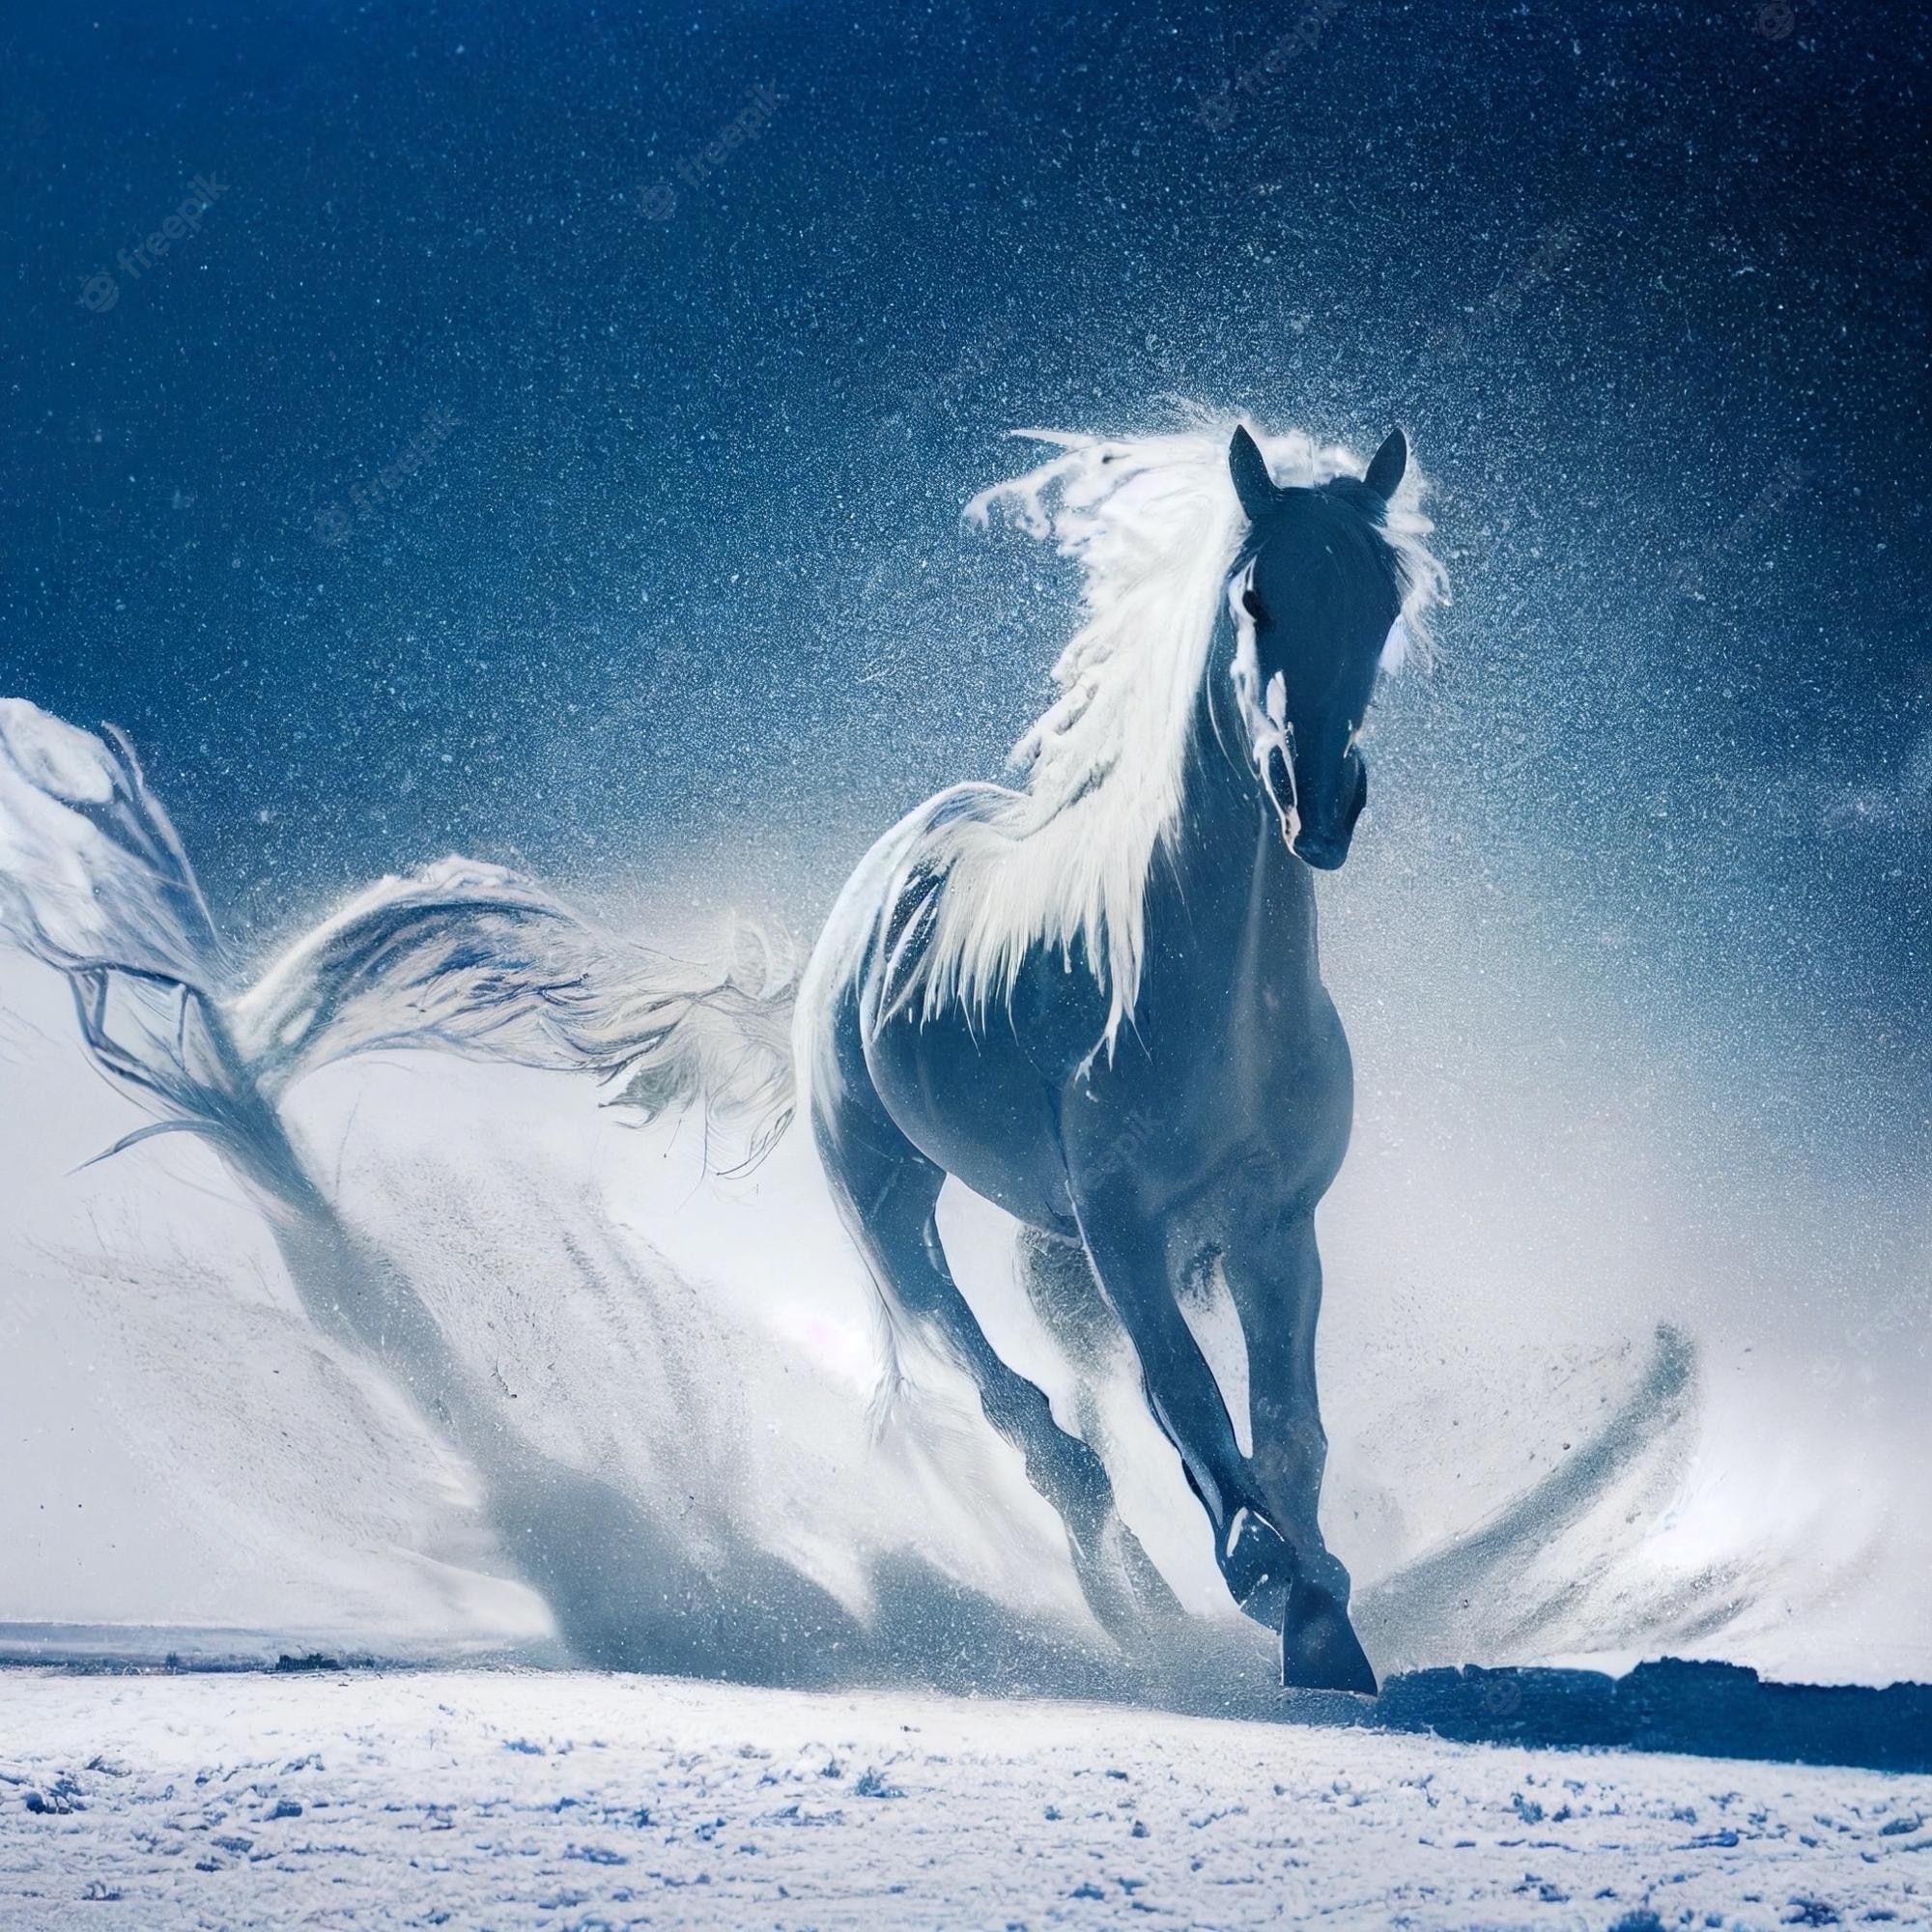  Pferde Im Schnee Hintergrundbild 2000x2000. Seite 3. Pferd Im Schnee Bilder Download auf Freepik